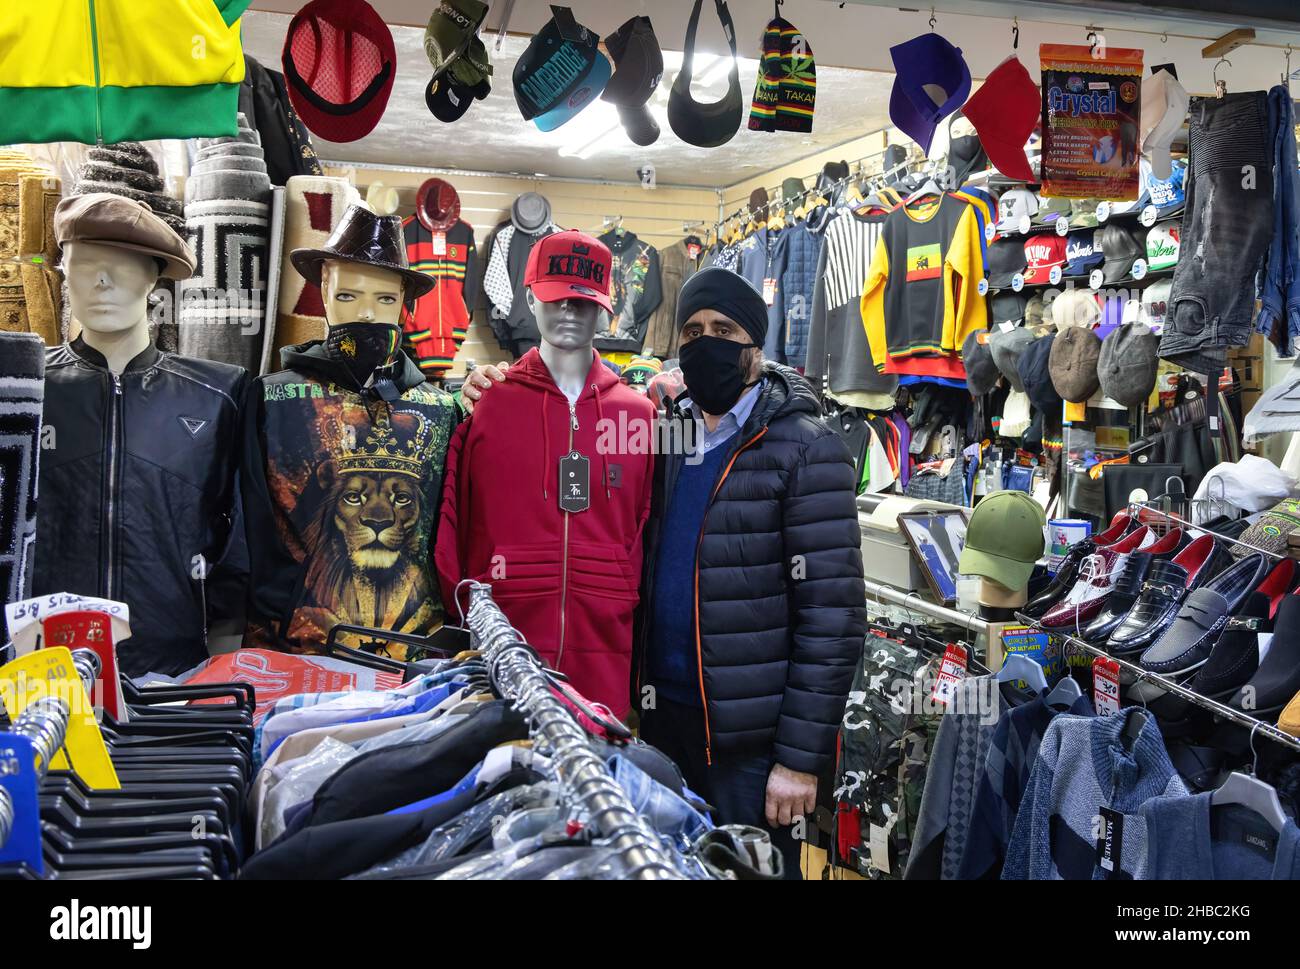 Un propriétaire de magasin ou un commerçant dans sa boutique de vêtements, portant un masque pendant la pandémie de COVID 19, Broadway Market, Tooting Bec, Londres Royaume-Uni Banque D'Images